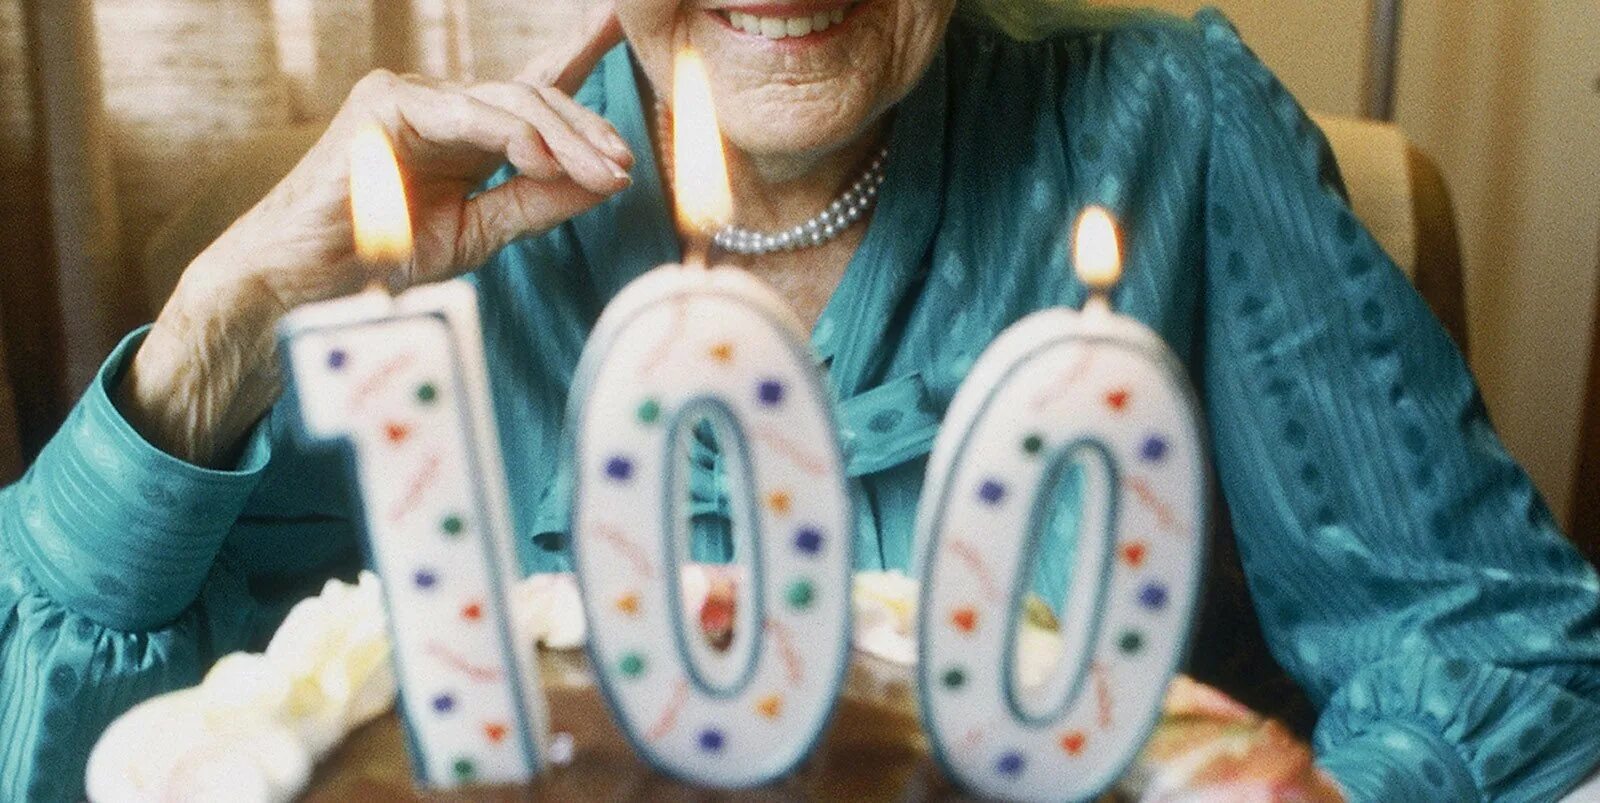 Год столетних юбилеев. Долгожители 100 лет. Люди которым больше 100 лет. Люди, дожившие до ста лет. Российские долгожители.